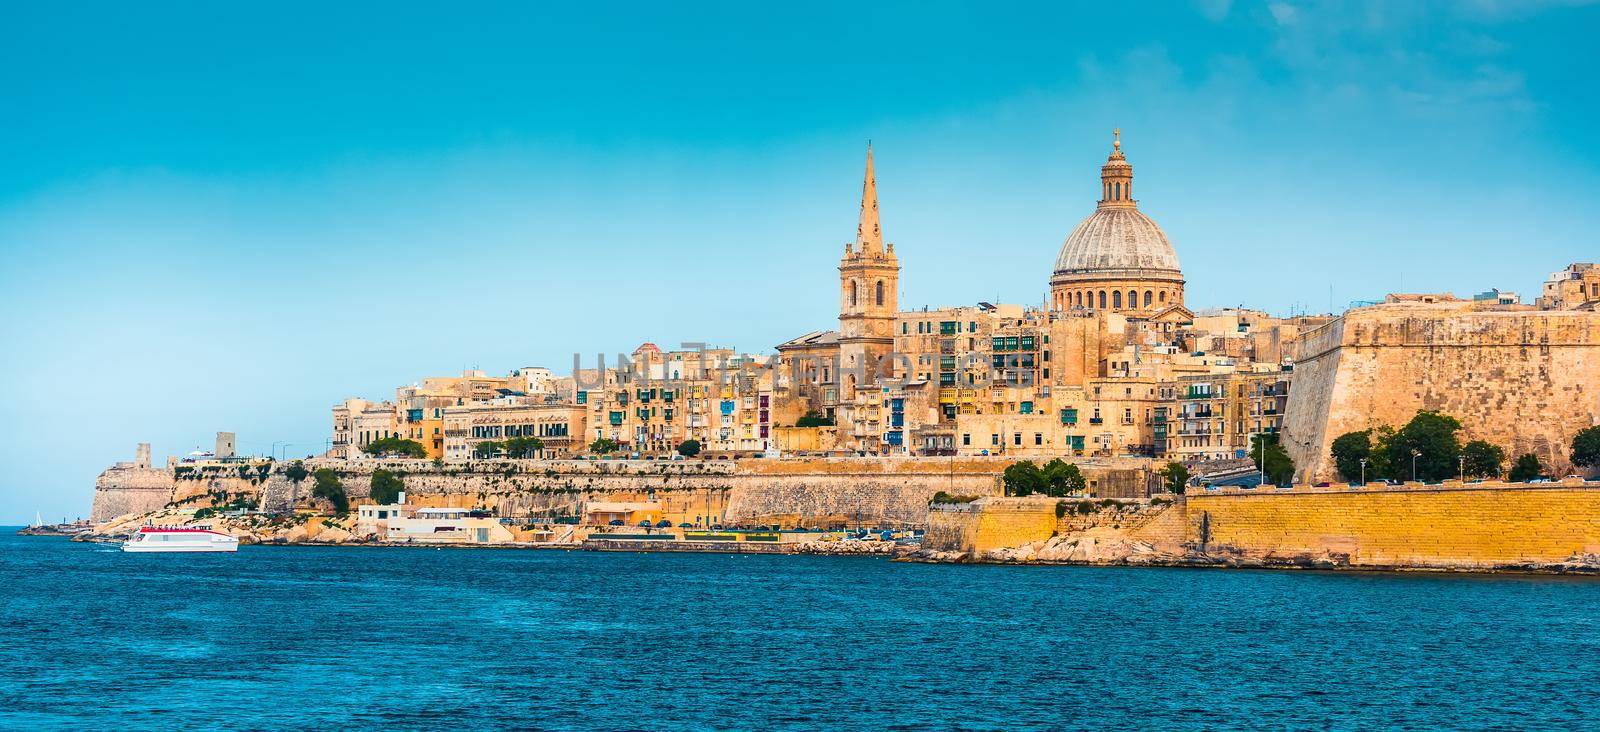 View of Marsamxett Harbour and Valletta by GekaSkr